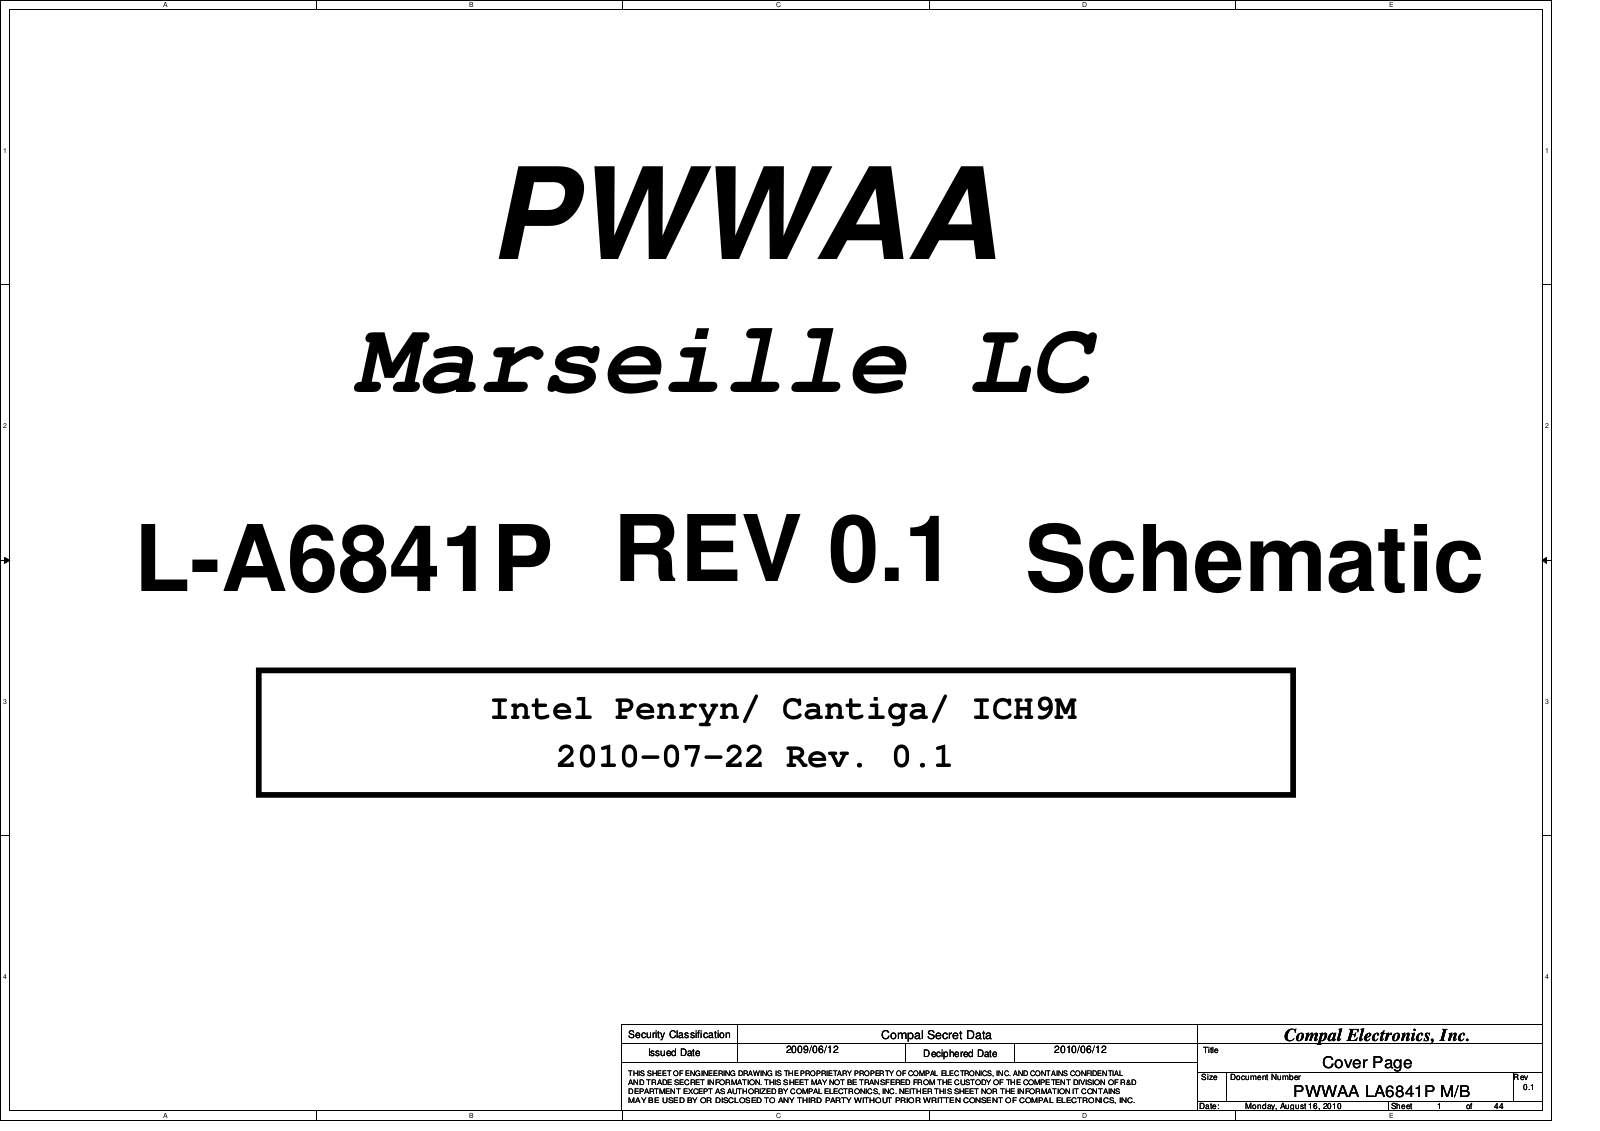 Compal LA-6841P PWWAA Marseille LC, Satellite C660 Schematic